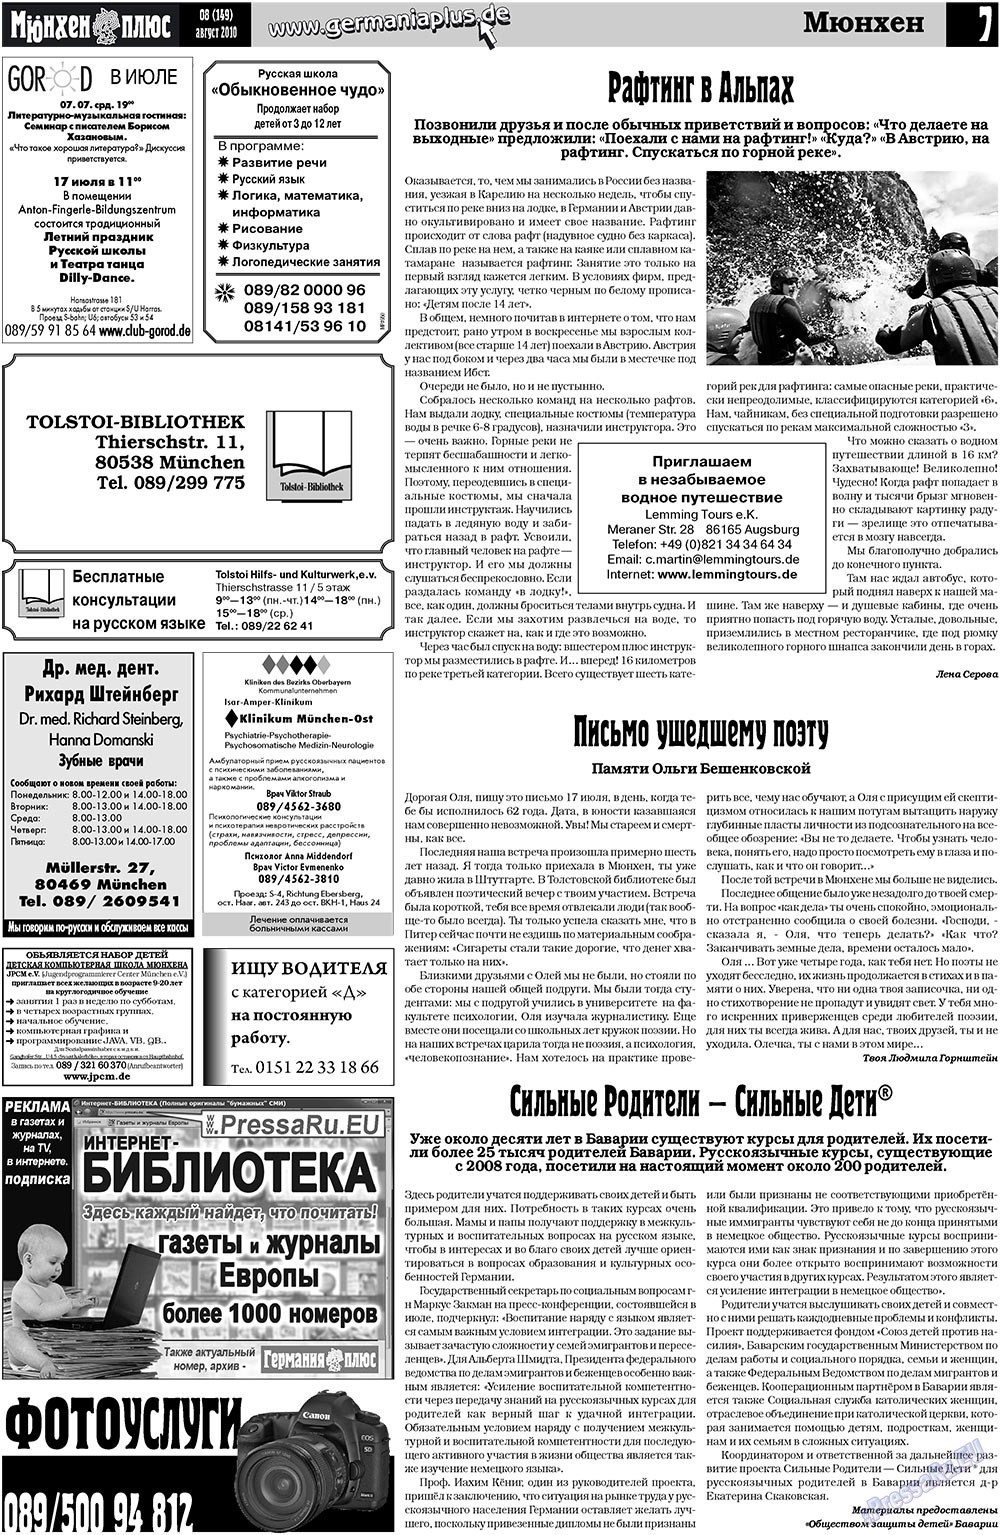 Германия плюс, газета. 2010 №8 стр.7